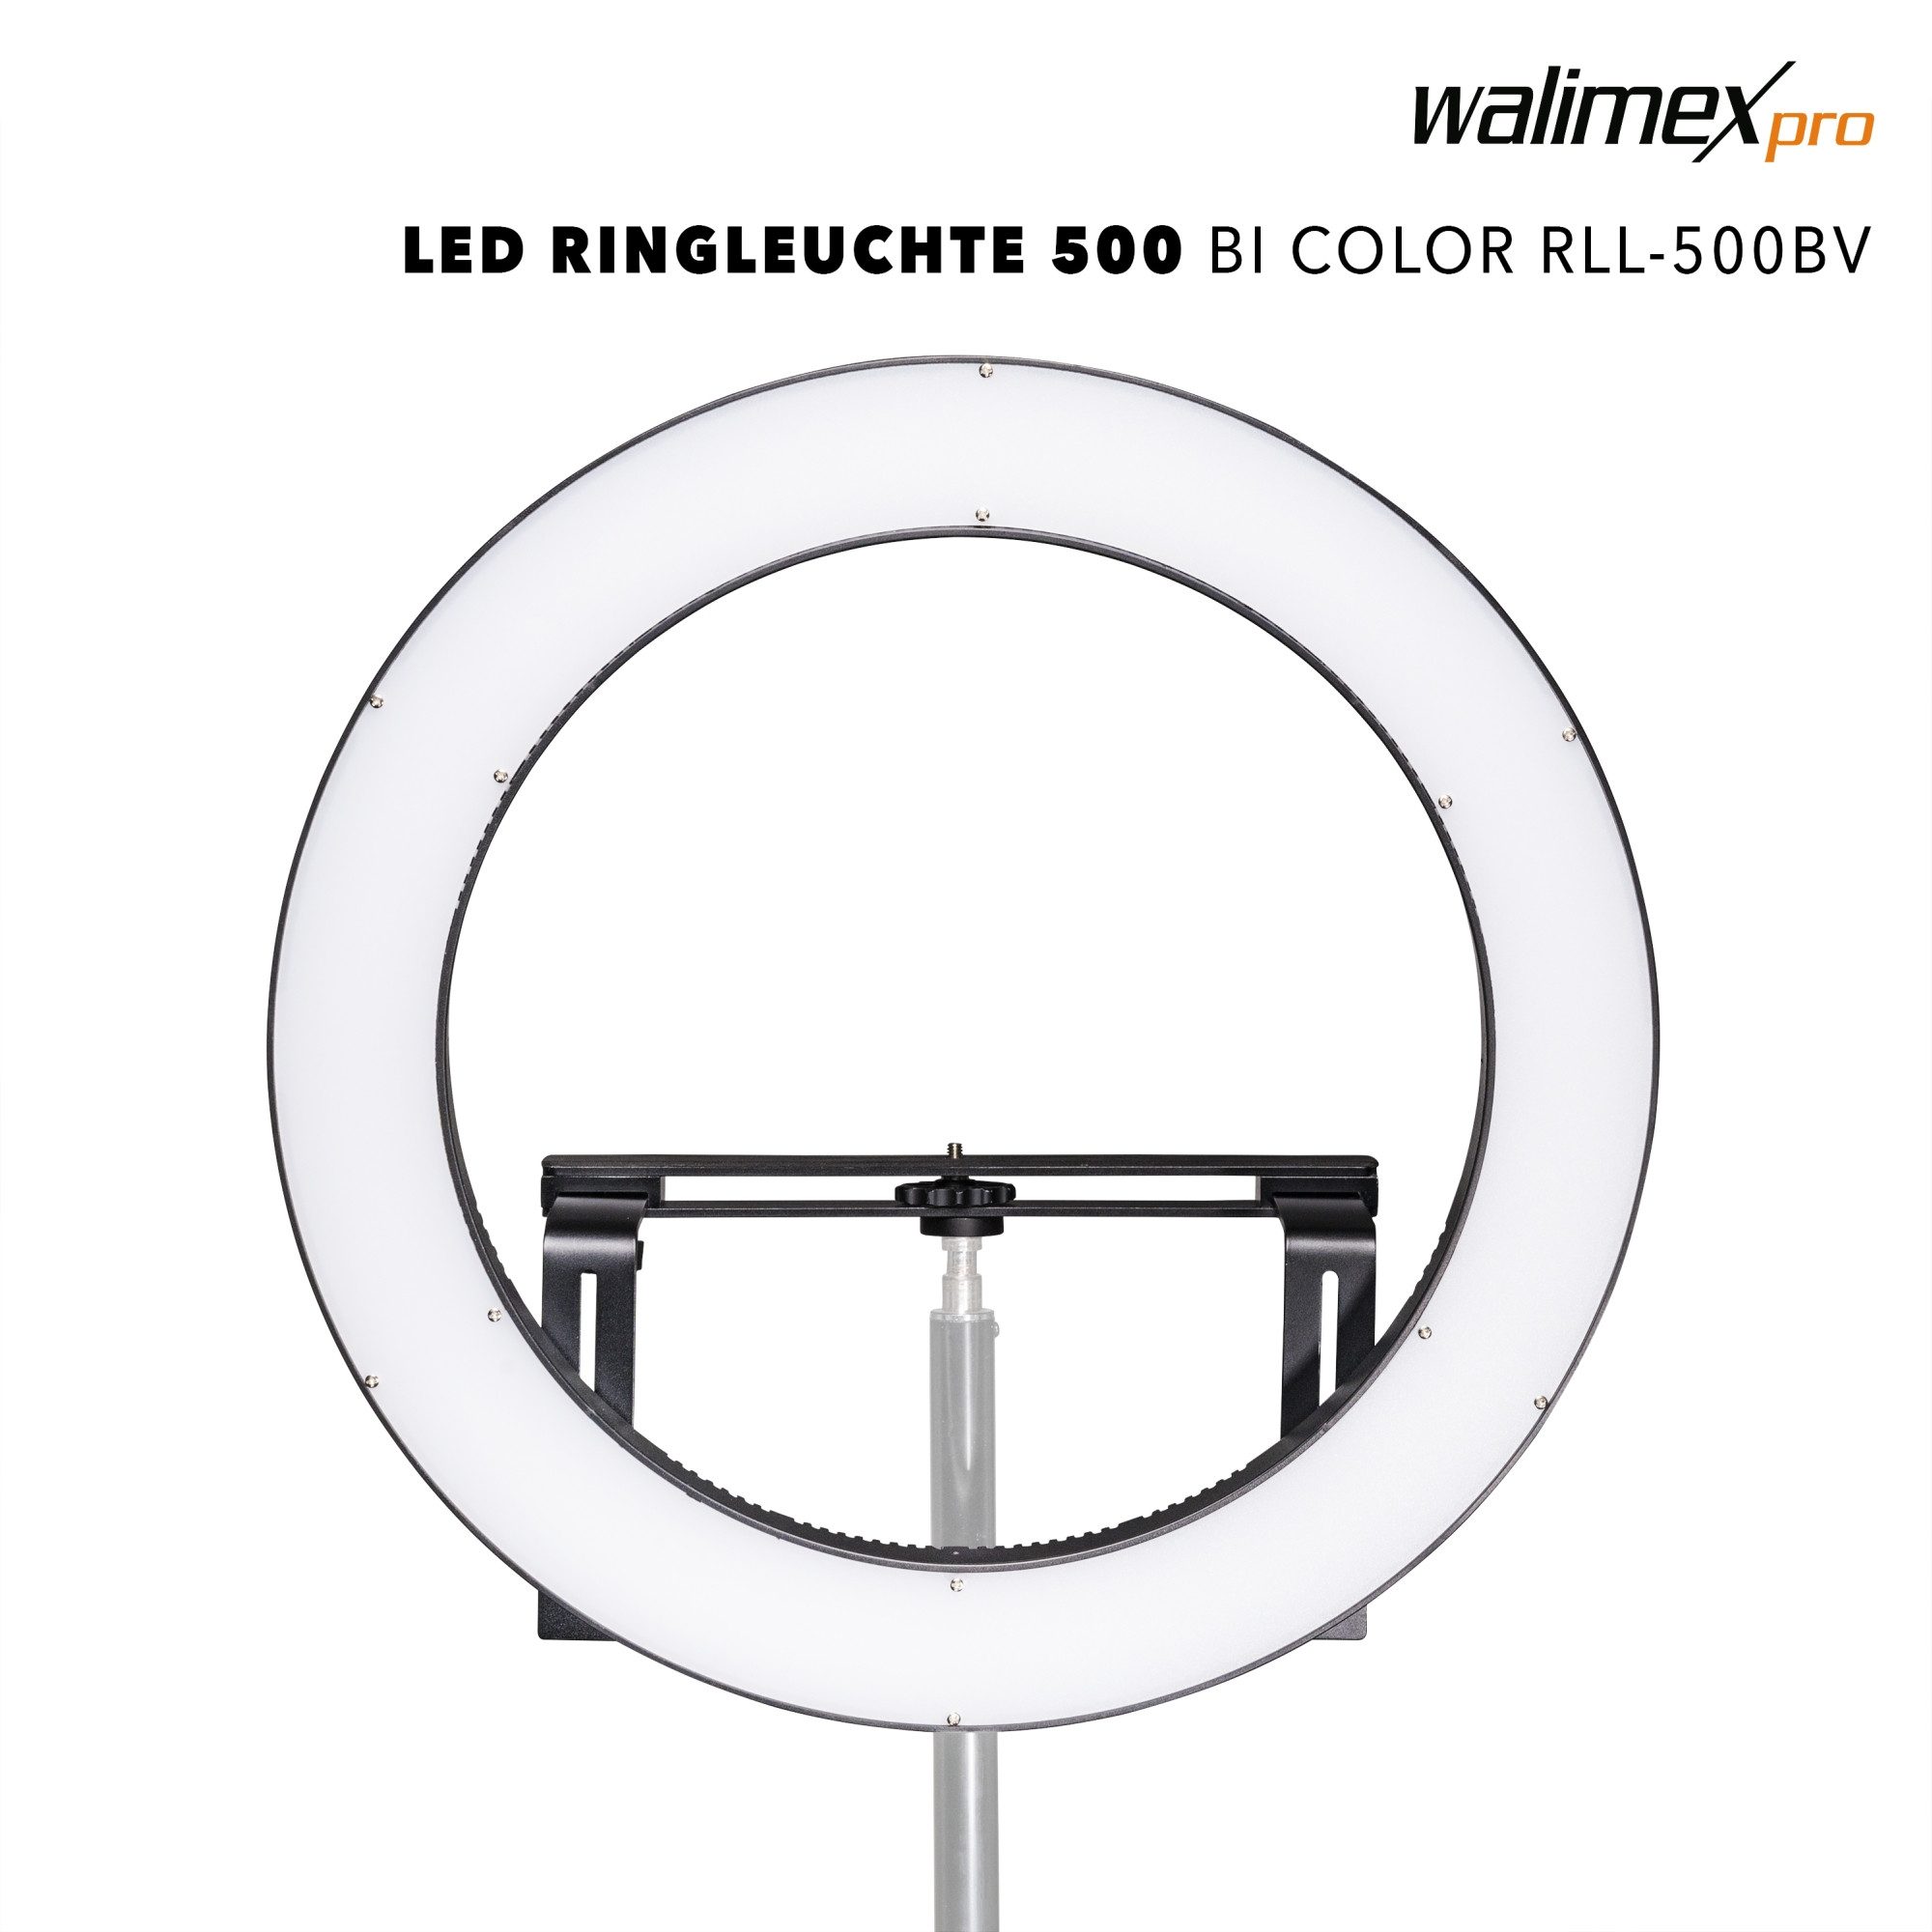 Walimex Pro LED Studiobeleuchtung LED Ringleuchte 500 Bi Color RLL-500BV